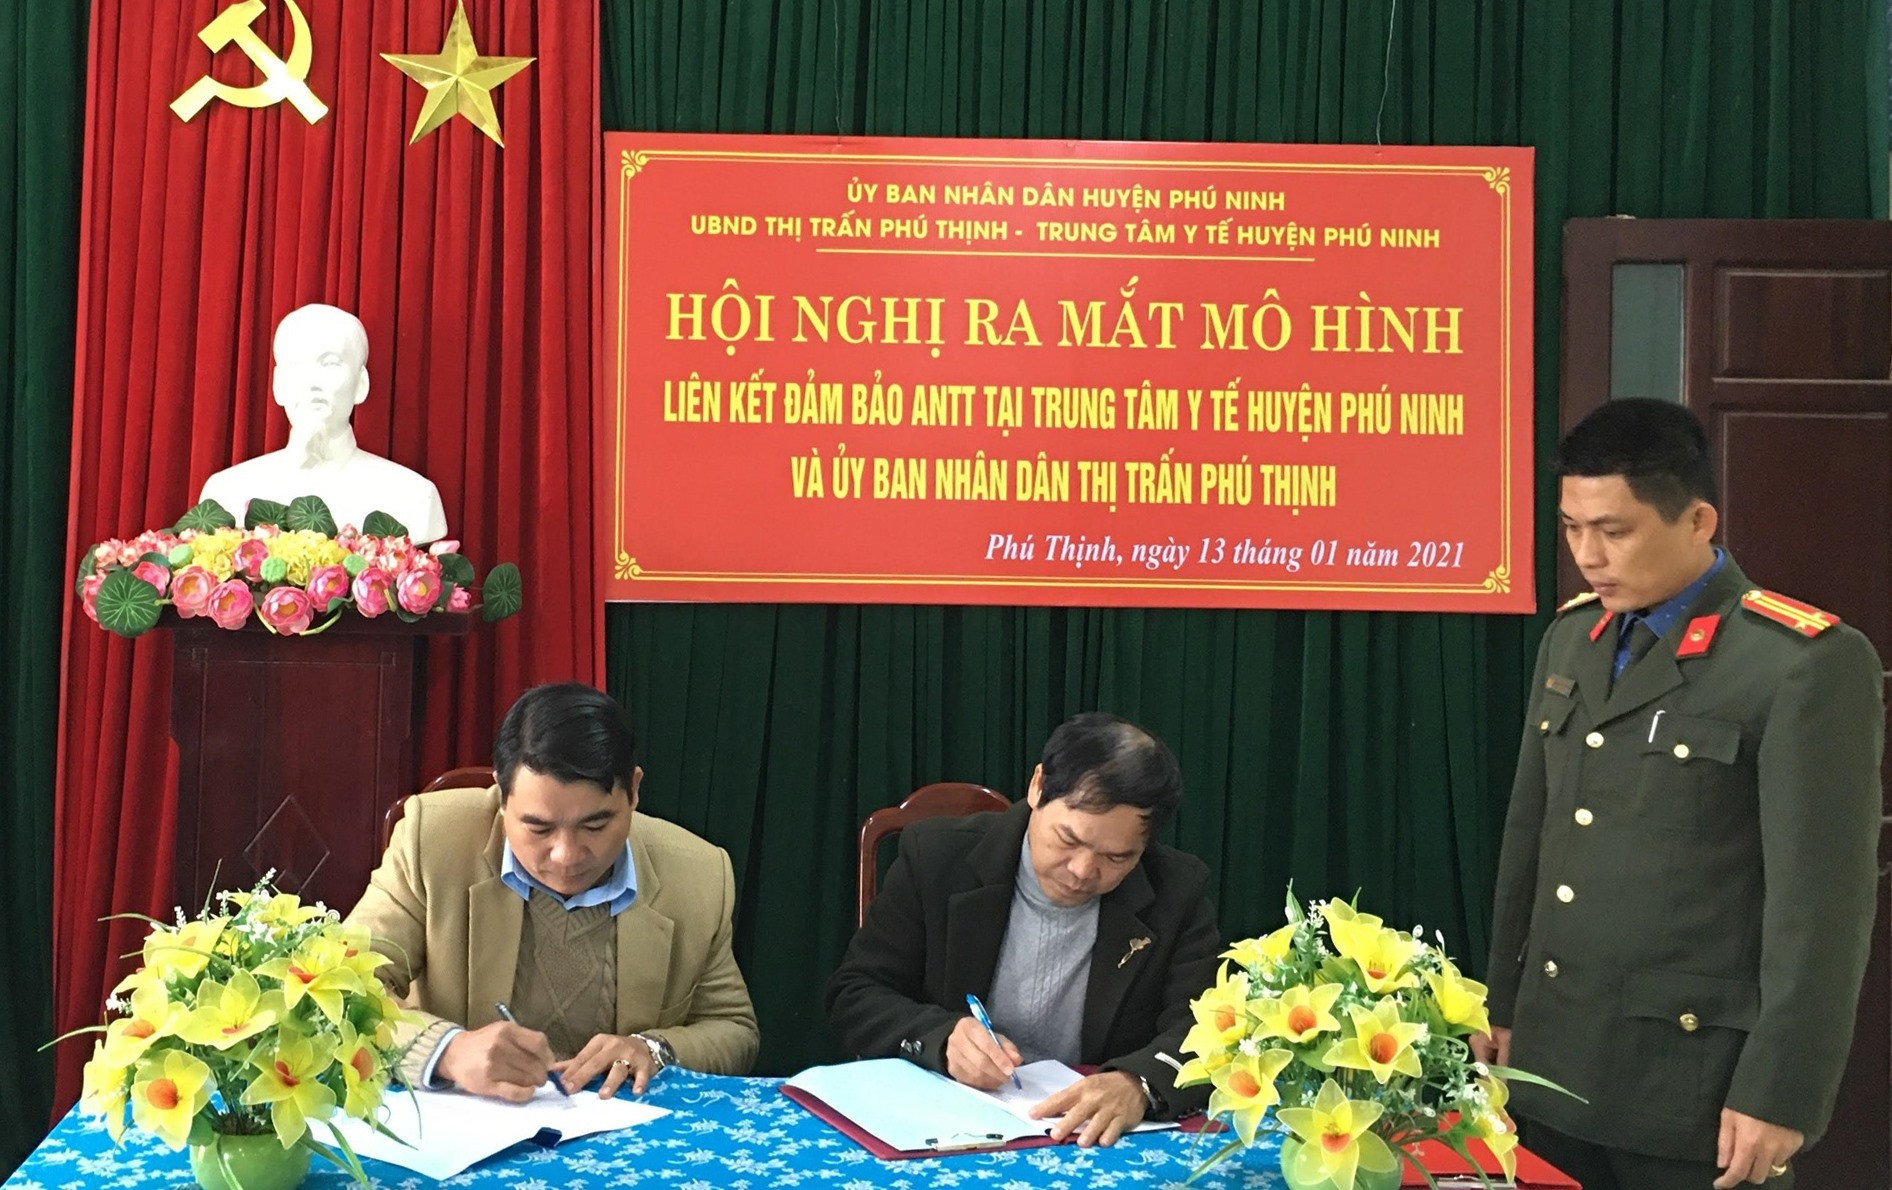 UBND thị trấn Phú Thịnh và Trung tâm Y tế huyện ký kết quy chế phối hợp đảm bảo ANTT. Ảnh: H.C